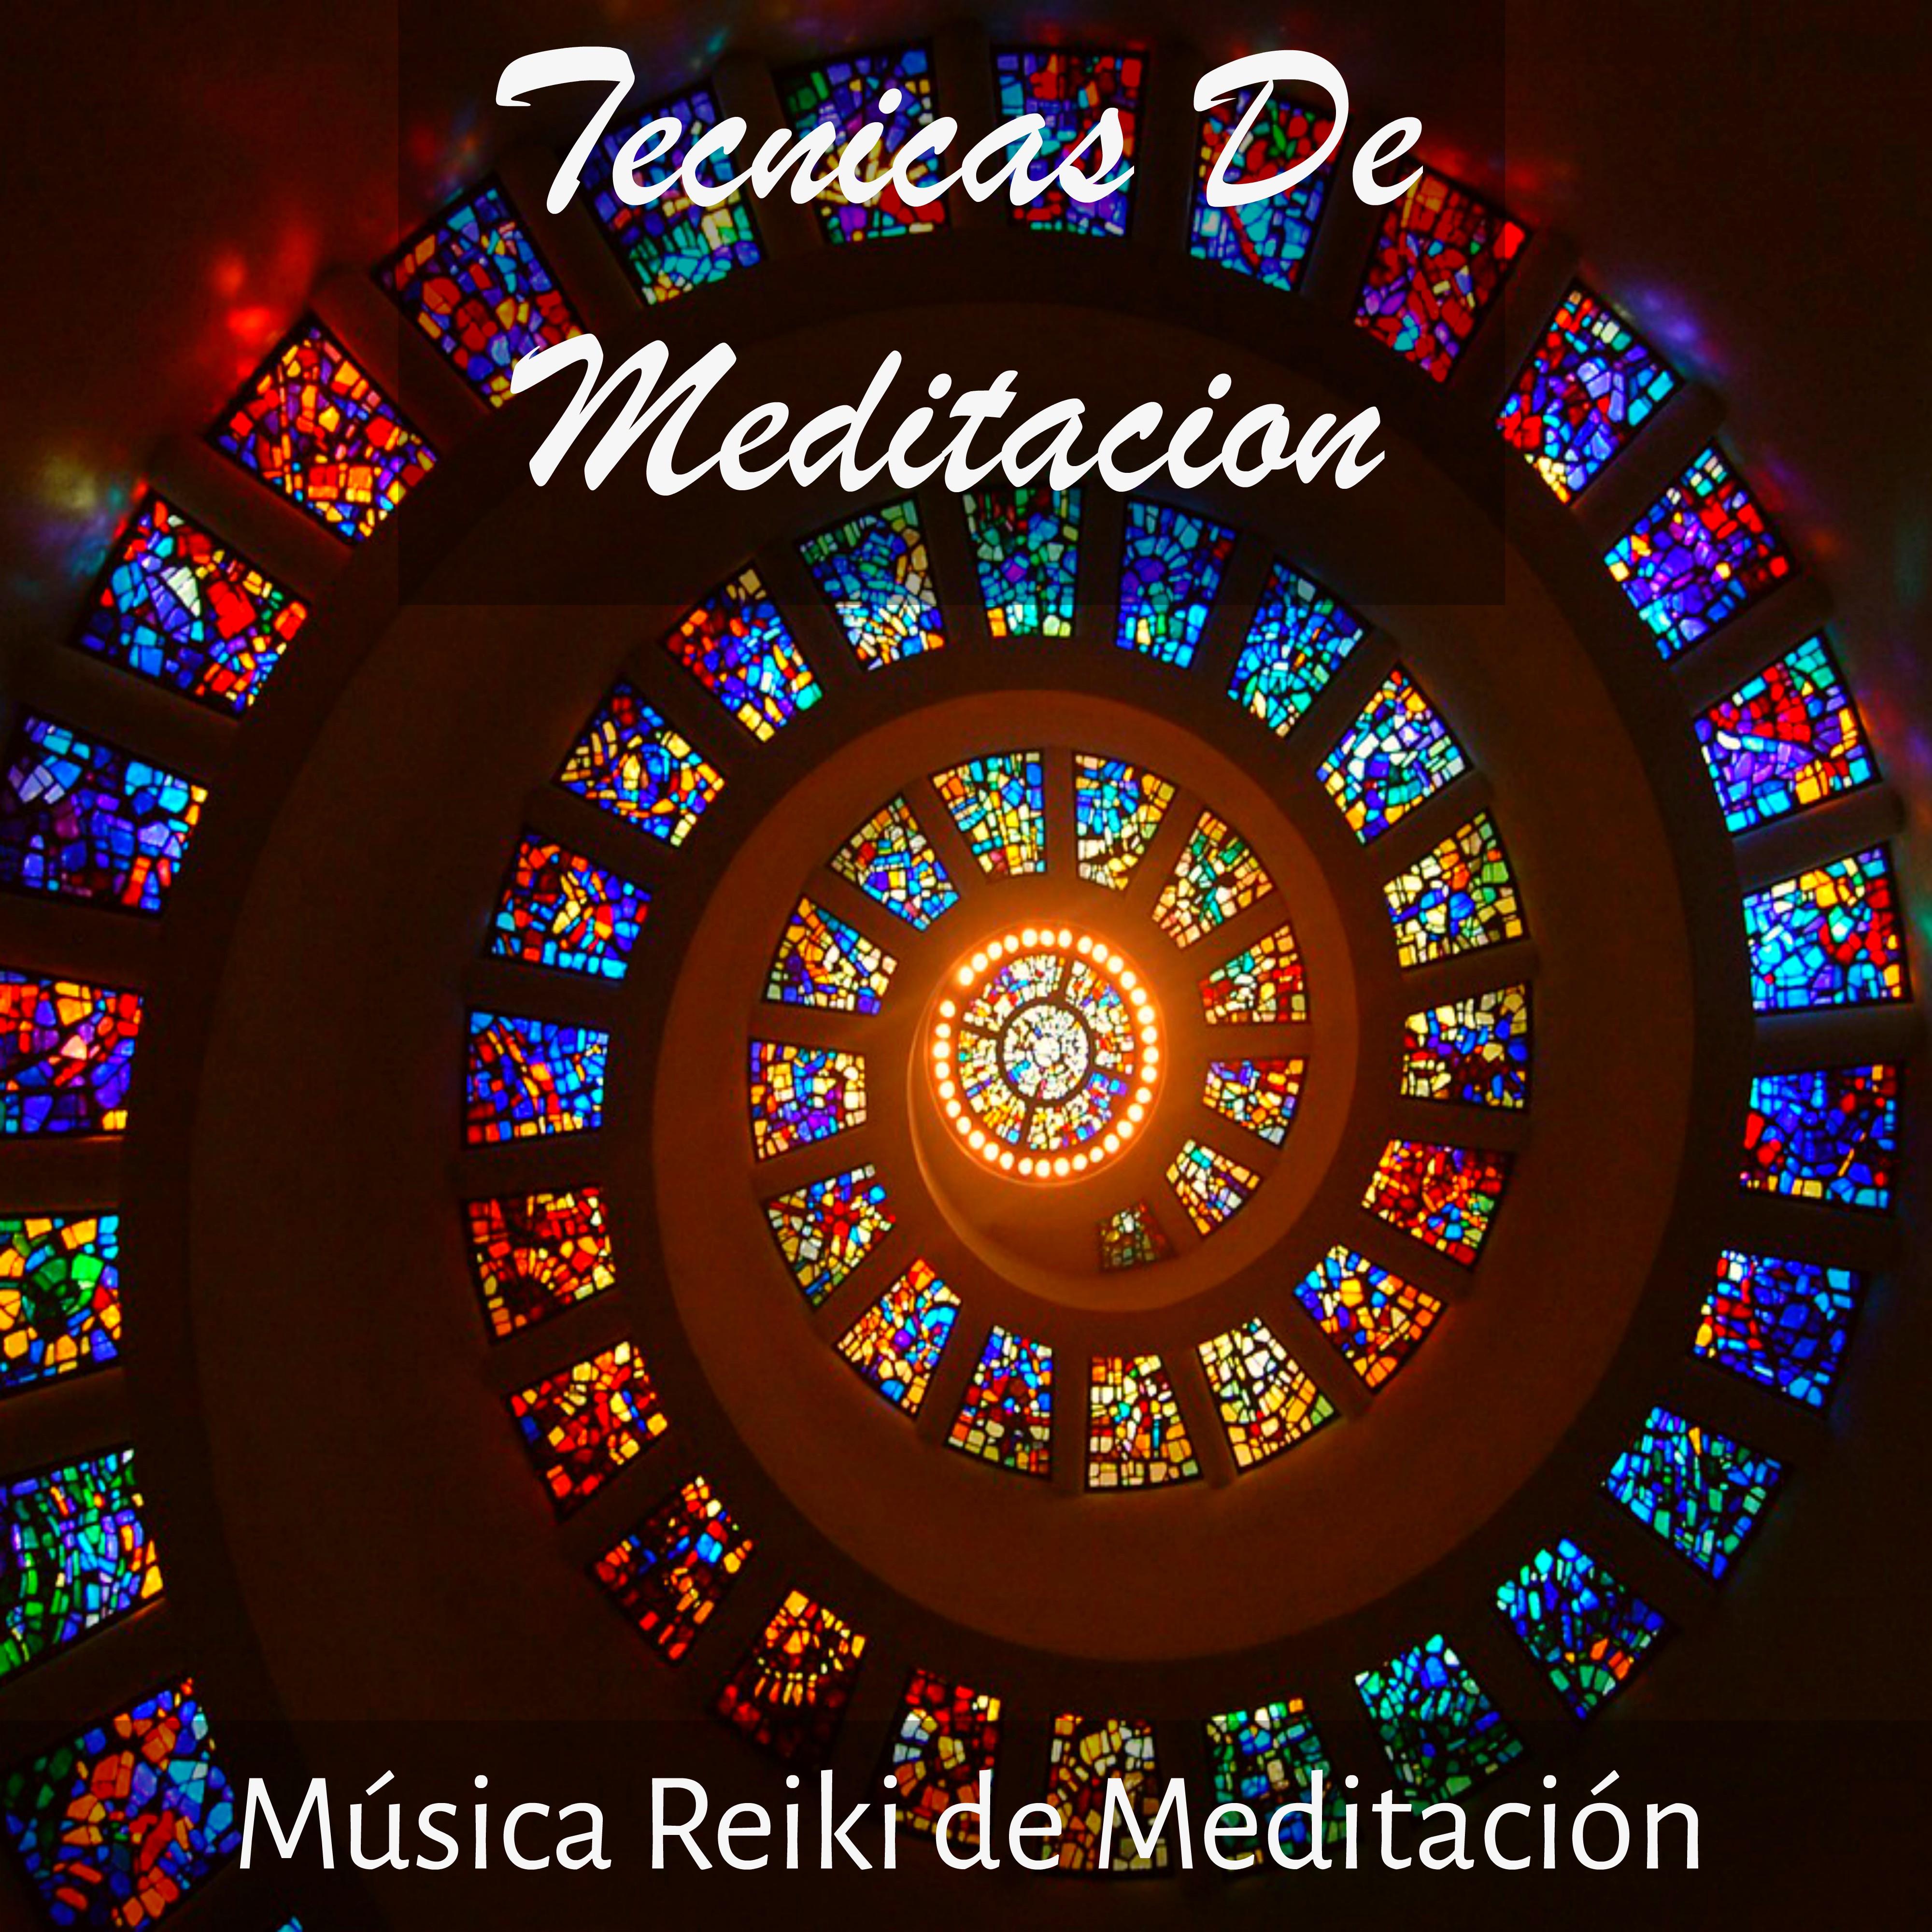 Tecnicas De Meditacion - Música Reiki de Meditación para Equilibrar Chakras Mejorar la Concentración con Sonidos Motivaciones New Age